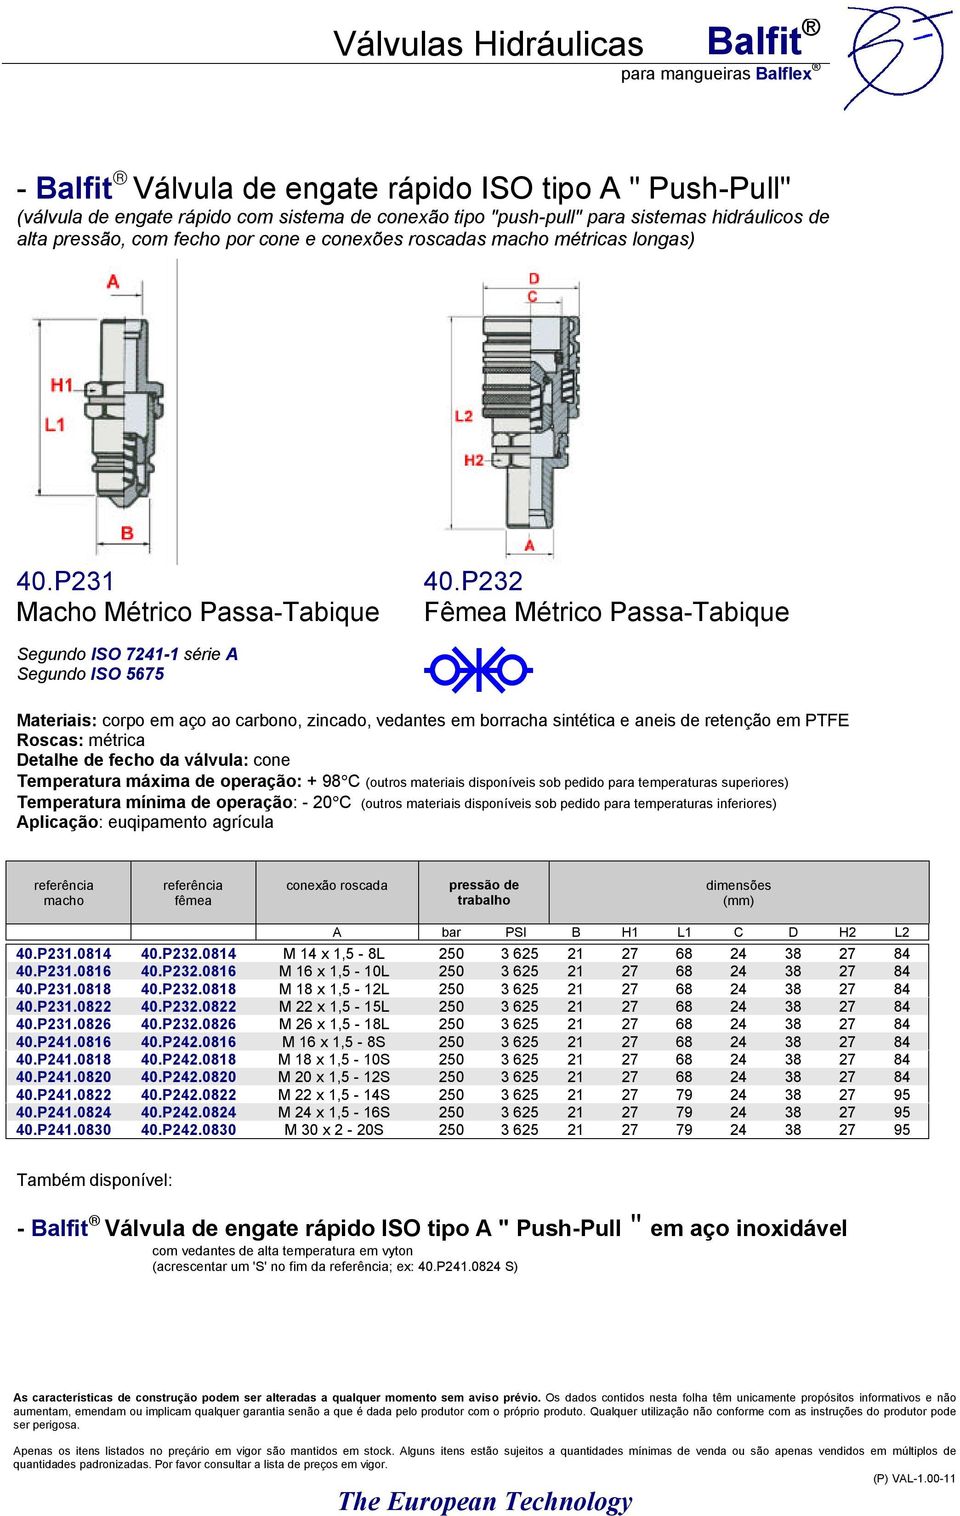 P232 Macho Métrico Passa-Tabique Fêmea Métrico Passa-Tabique Segundo ISO 7241-1 série A Segundo ISO 5675 Materiais: corpo em aço ao carbono, zincado, vedantes em borracha sintética e aneis de